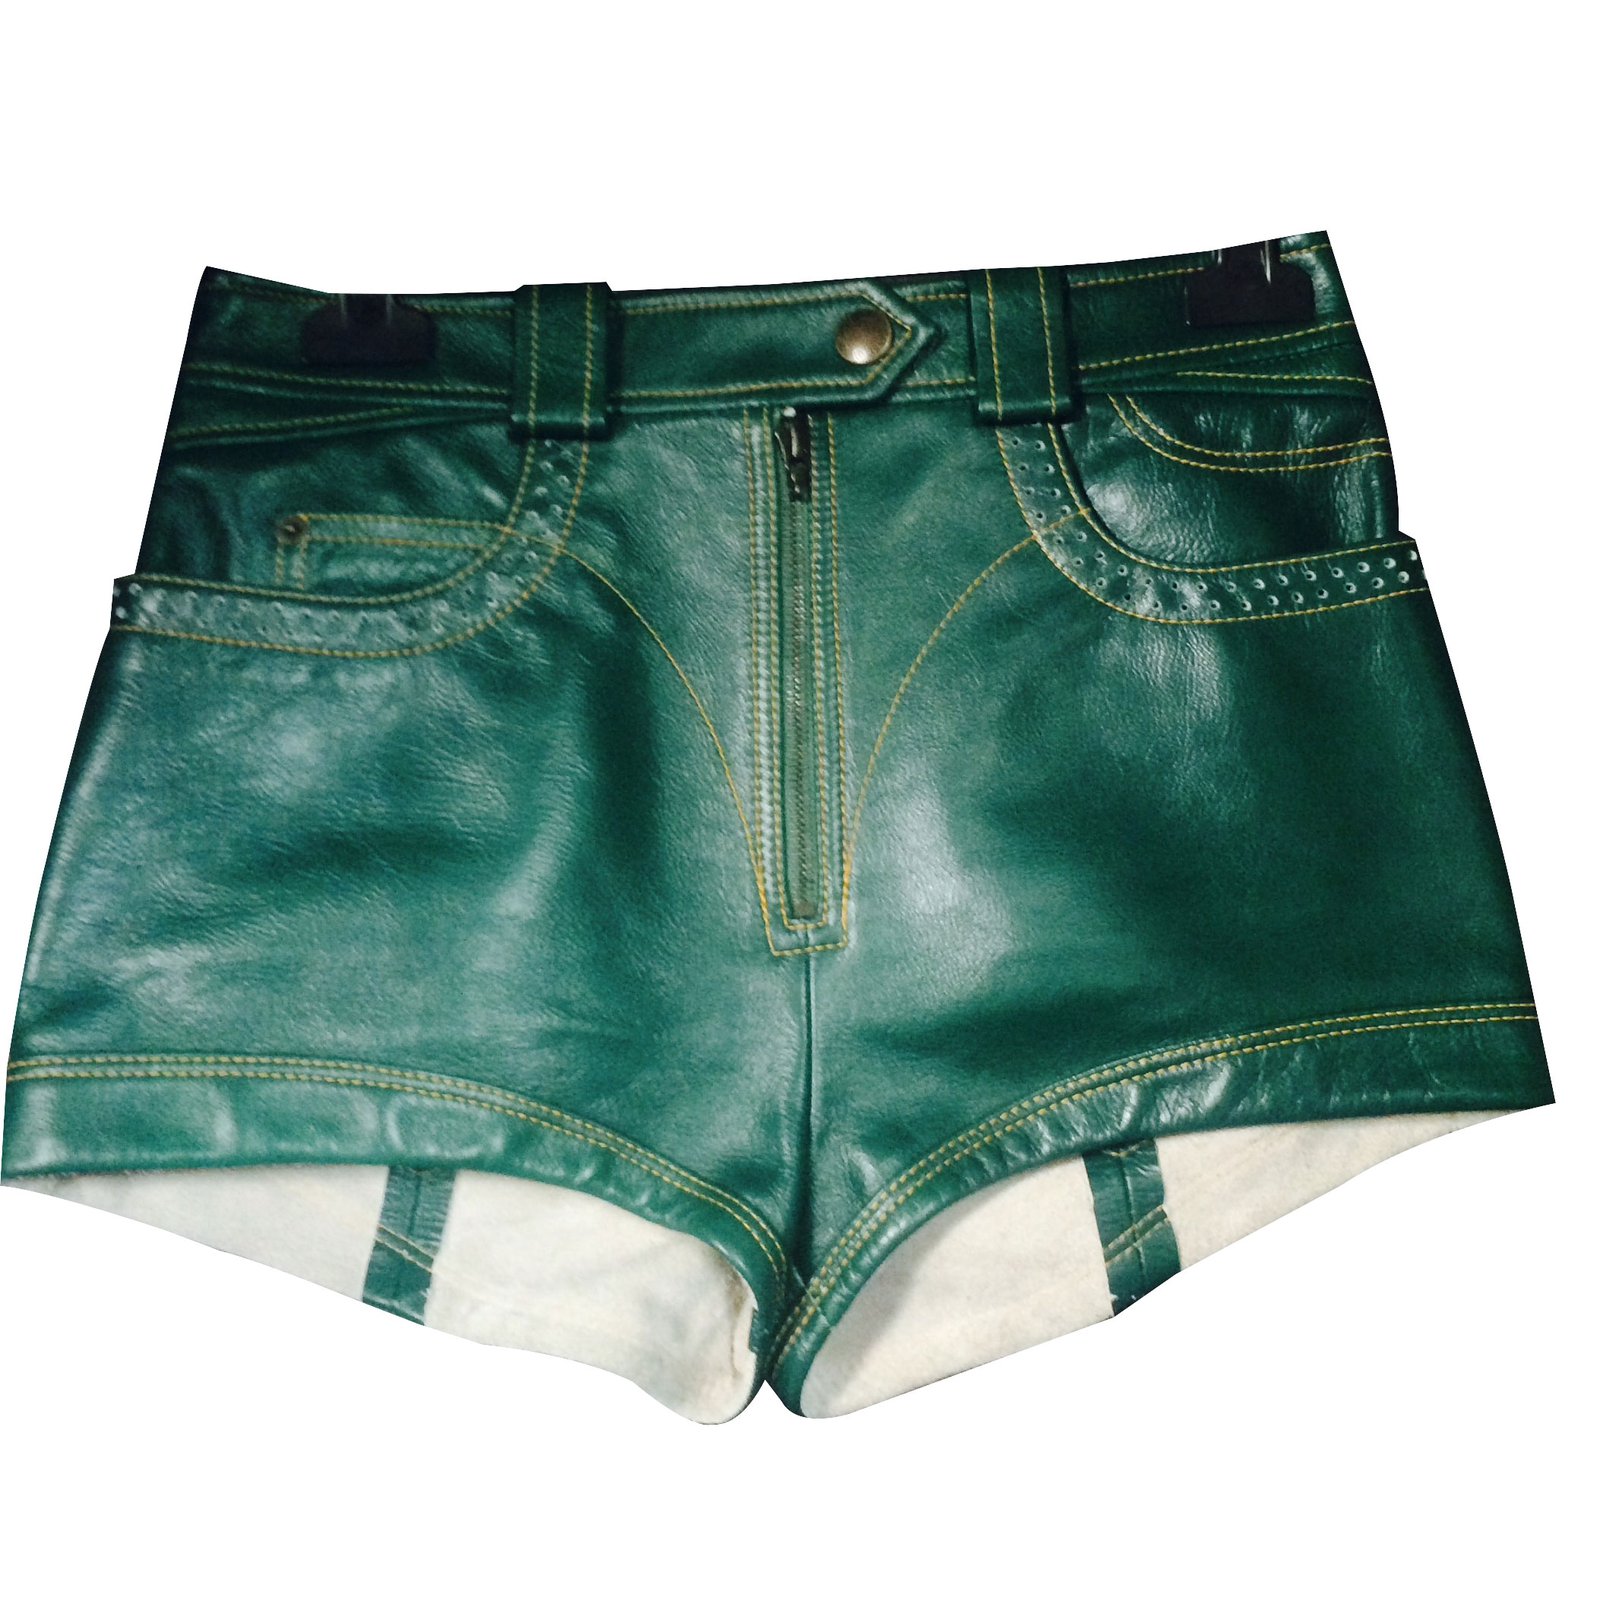 LOUIS VUITTON Printed Nylon Swim Shorts Green. Size M0